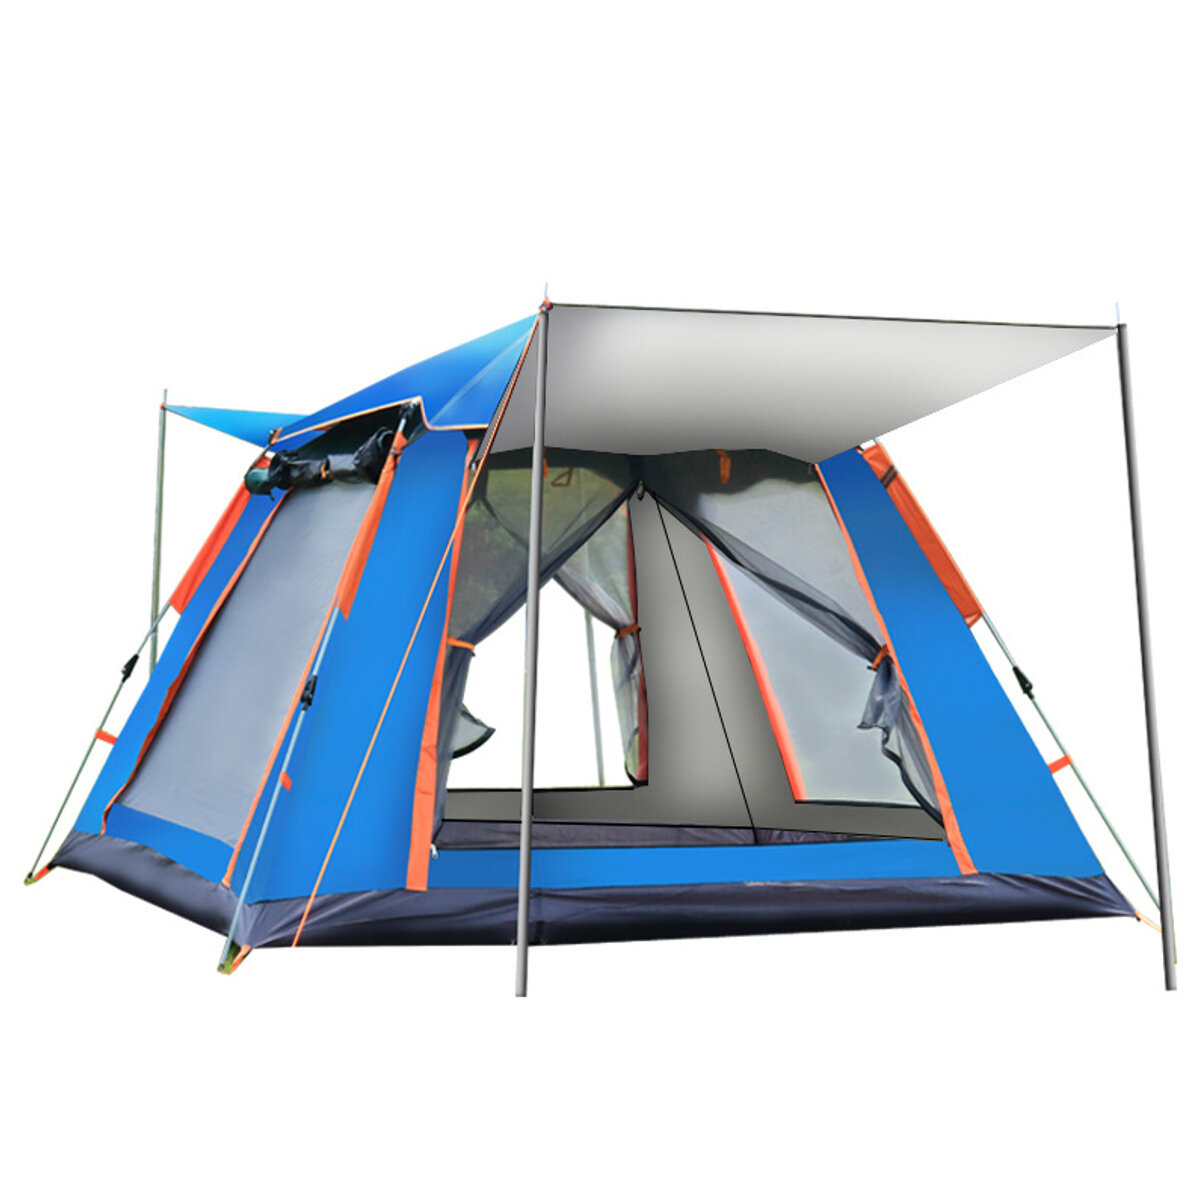 4-5 أشخاص خيمة إعداد أوتوماتيكية بالكامل UV محمية عائلية للنزهات والسفر وملاجئ الشمس في الهواء الطلق غير نافذ للمطر خيام تخييم مقاومة للرياح